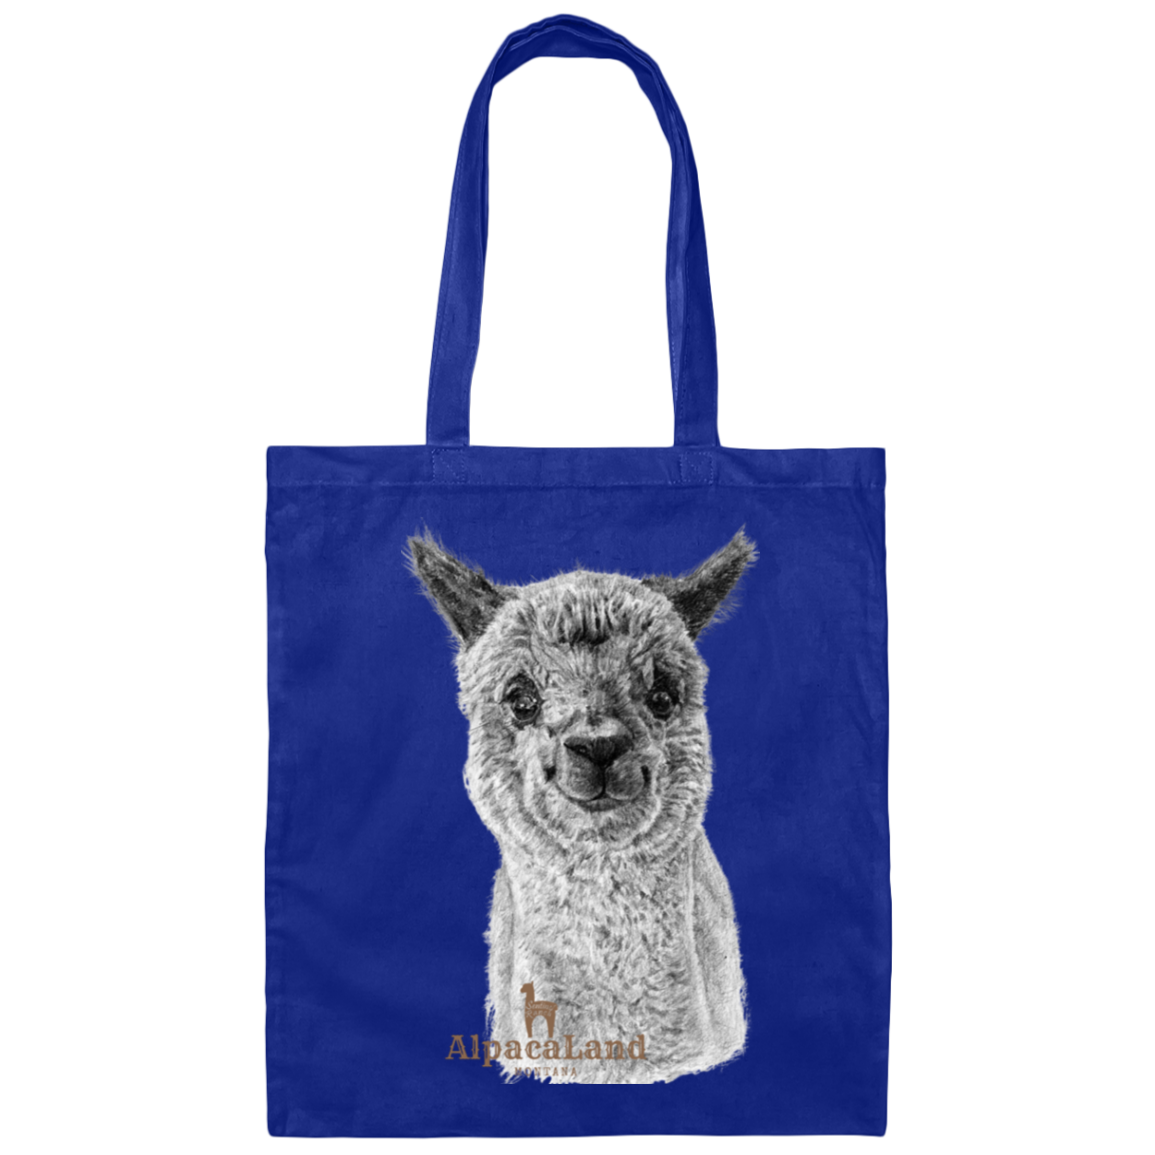 AlpacaLand Canvas Tote Bag